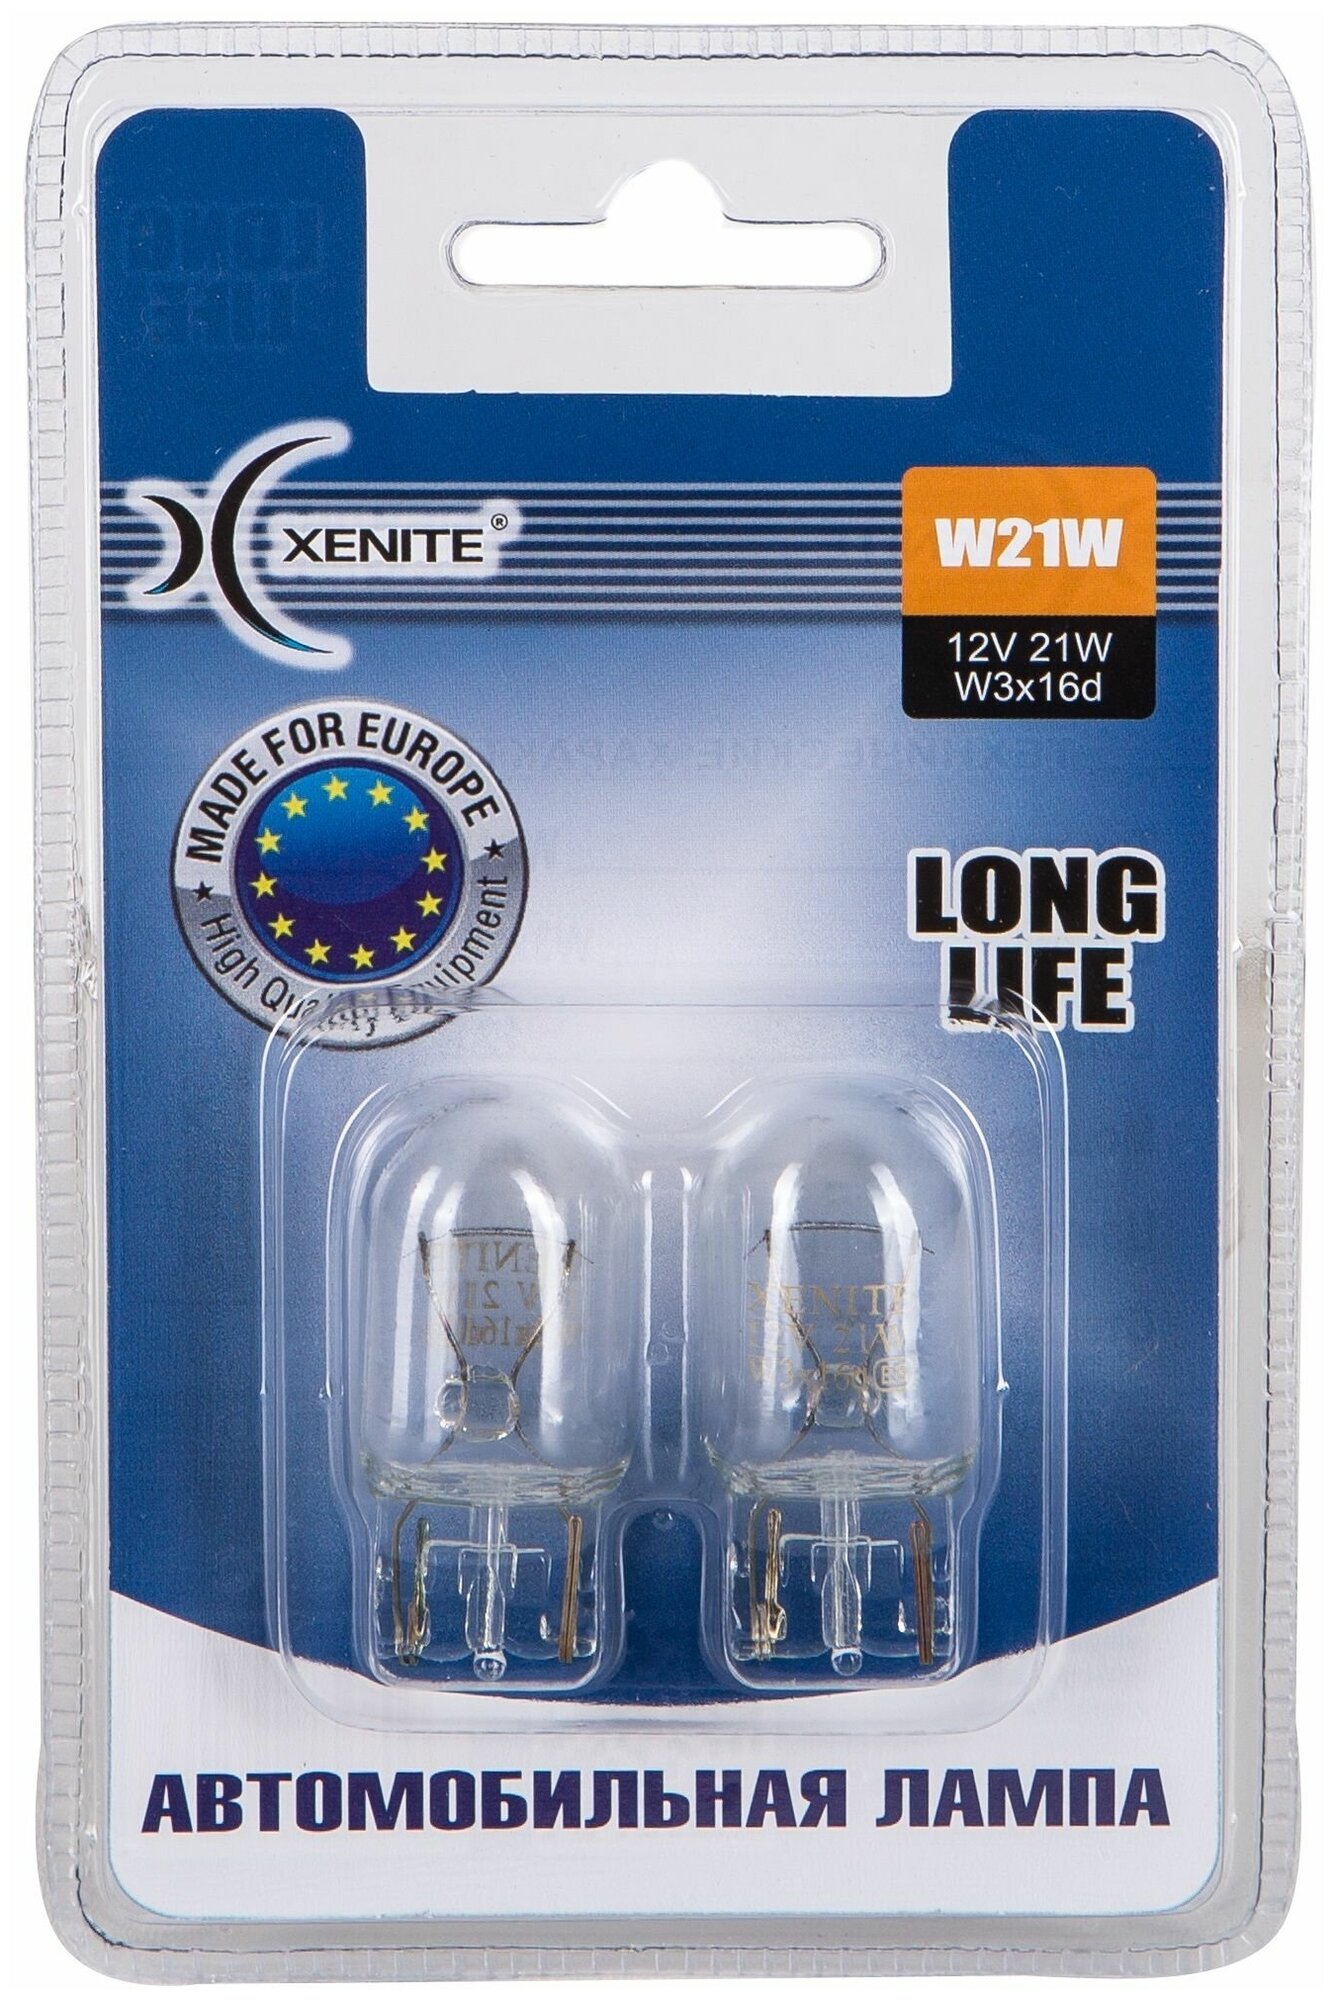 Лампа автомобильная накаливания Xenite Long Life 1007115 W21W 21W W3x16d 2 шт.